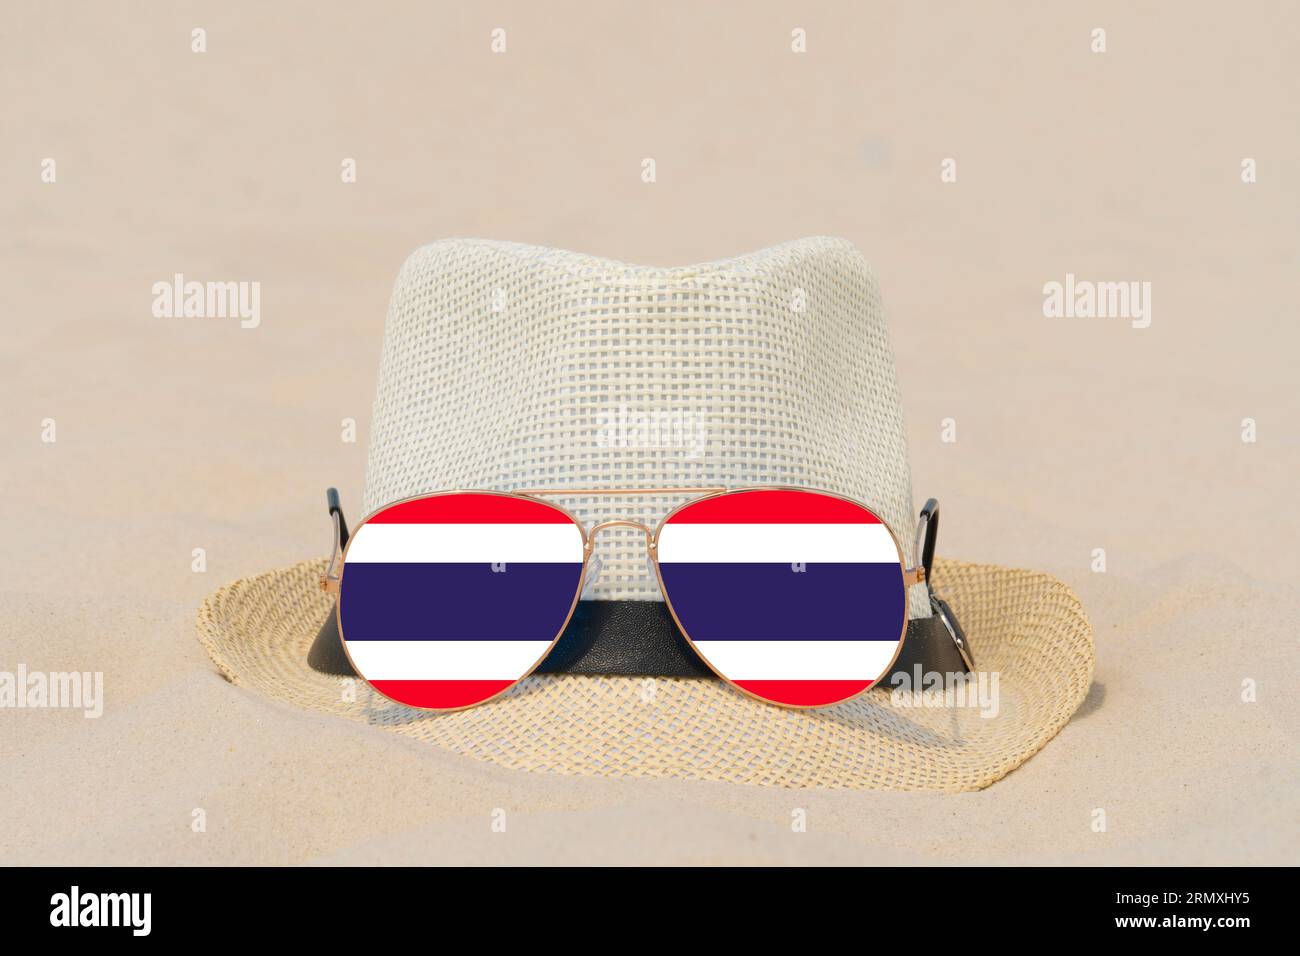 Sonnenbrille mit Brille in Form einer Flagge Thailands und einem Hut liegen auf Sand. Konzept von Sommerurlaub und Reisen in Thailand. Sommerruhe Stockfoto